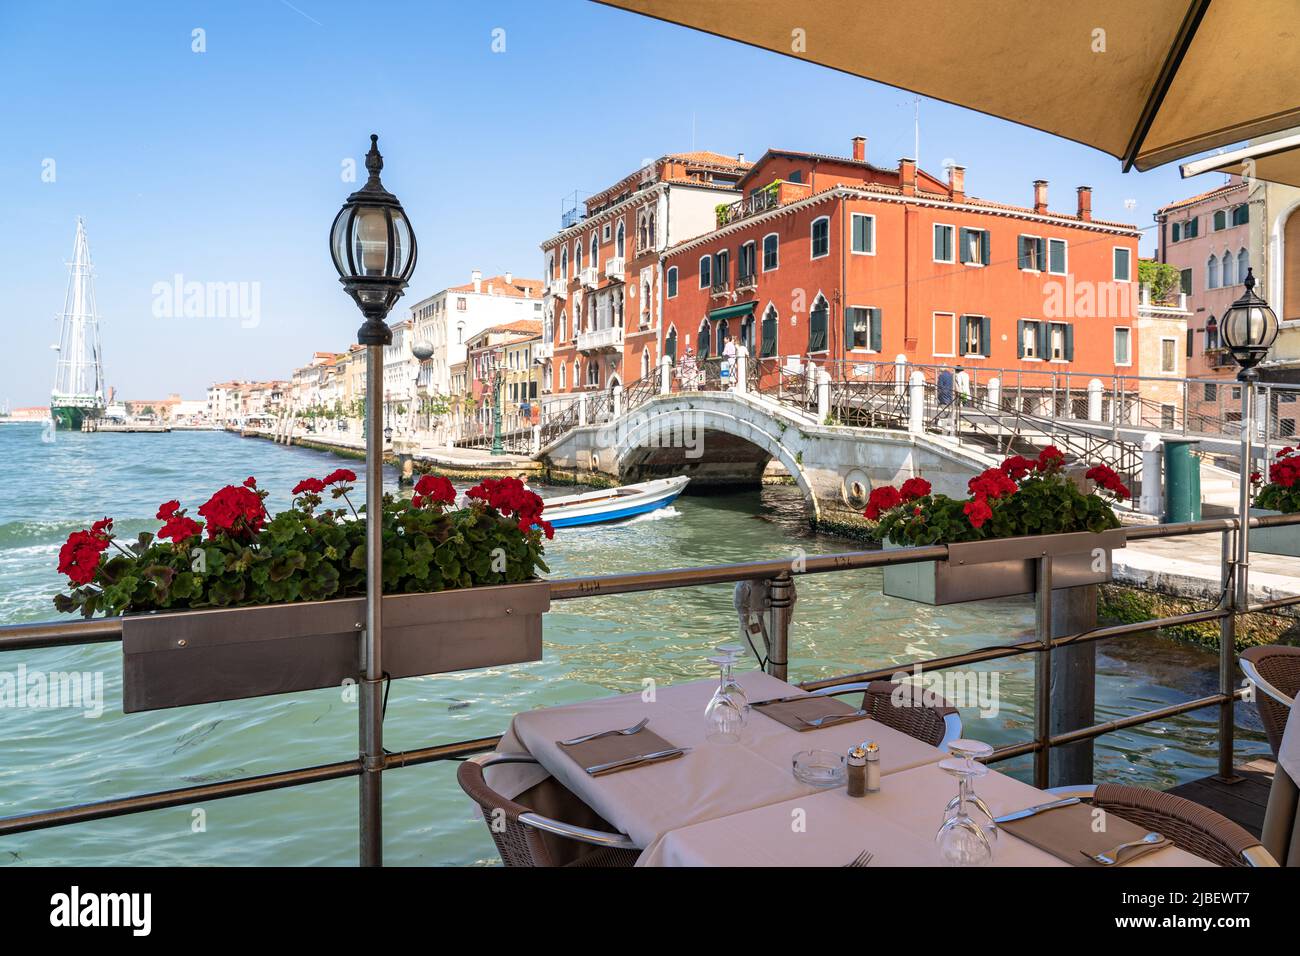 Landschaftlich schöner Blick auf das Café im Freien in Venedig, Italien Stockfoto